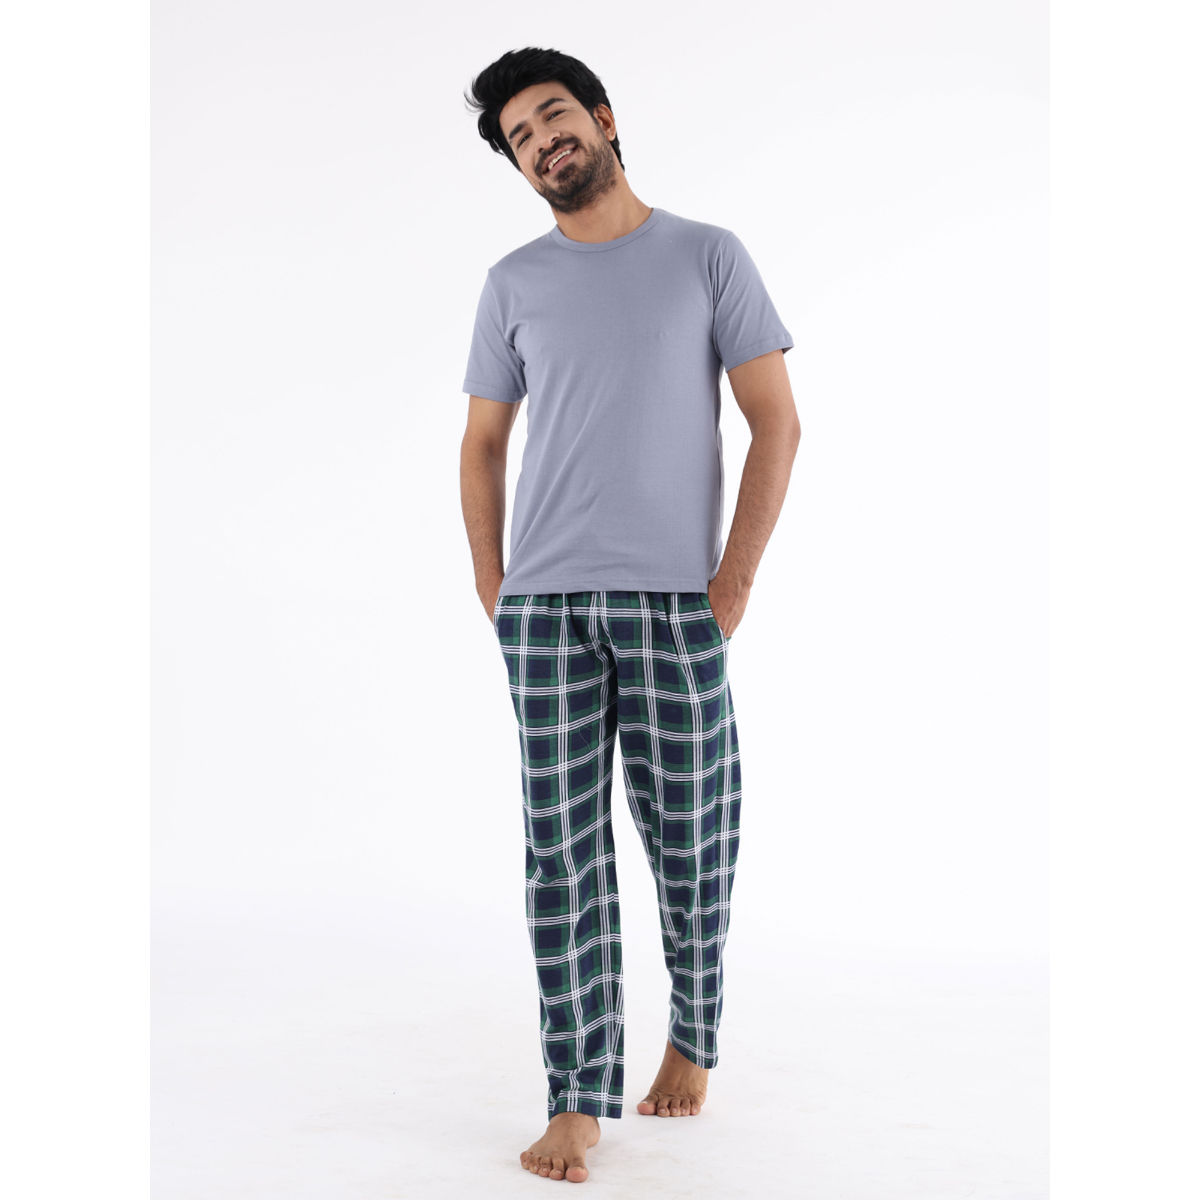 Mens Pyjamas  Buy Mens Pyjamas Online  Vilan Apparaels  VILAN APPARELS